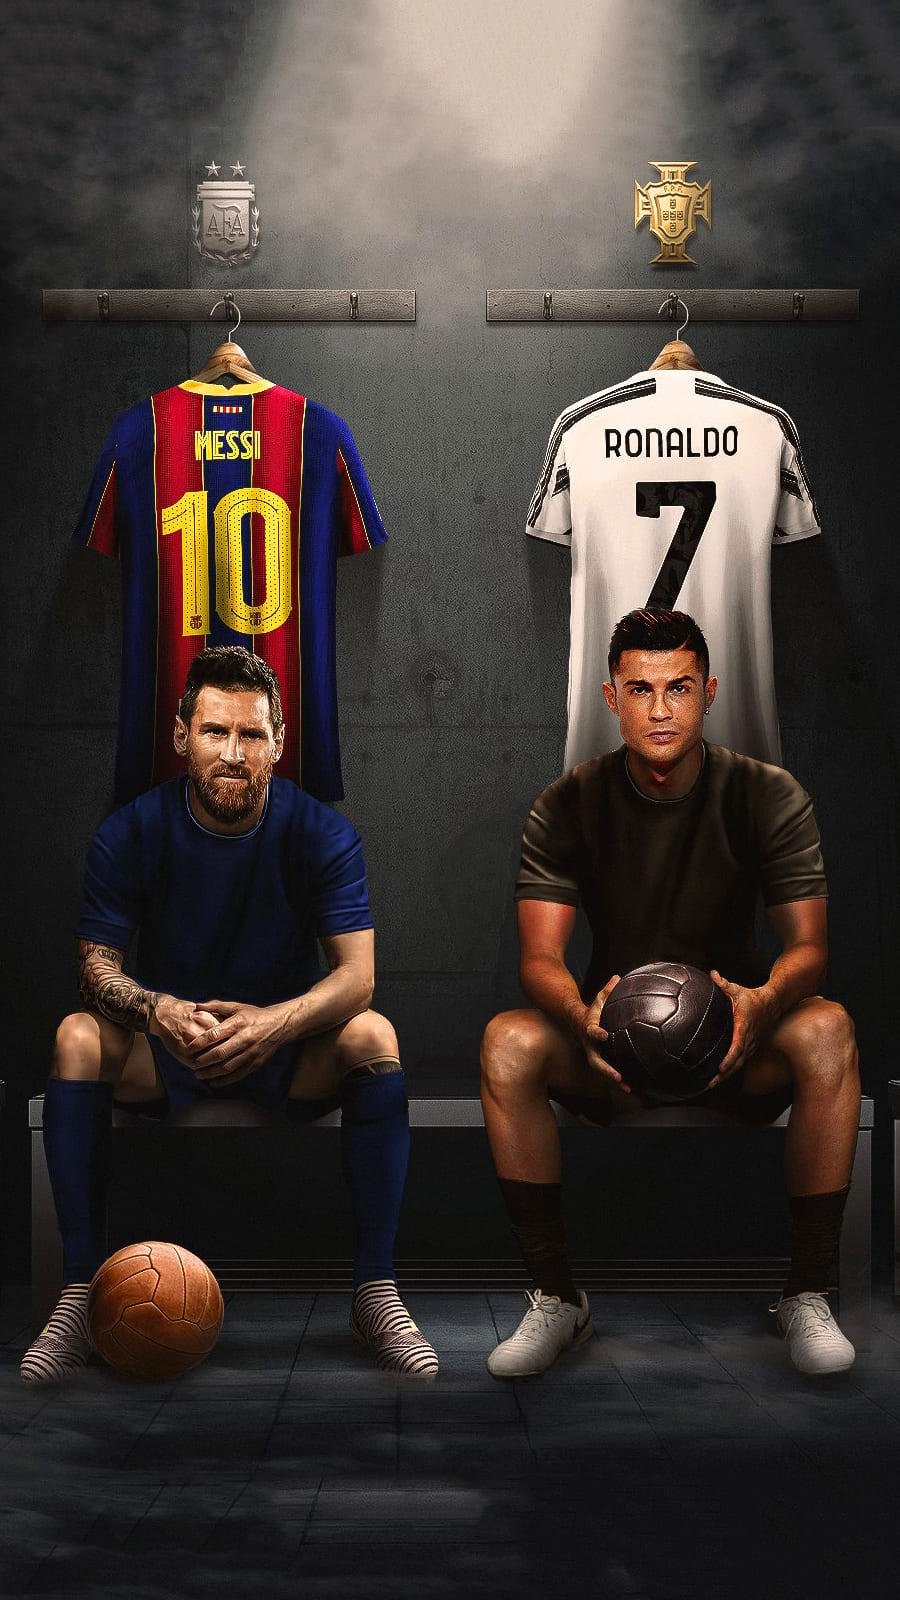 Messi và Ronaldo là hai trong số những cầu thủ hay nhất trong lịch sử bóng đá. Tận hưởng hình nền đẹp và tìm hiểu thêm về cuộc đua đầy cạnh tranh và hào nhoáng giữa hai siêu sao.